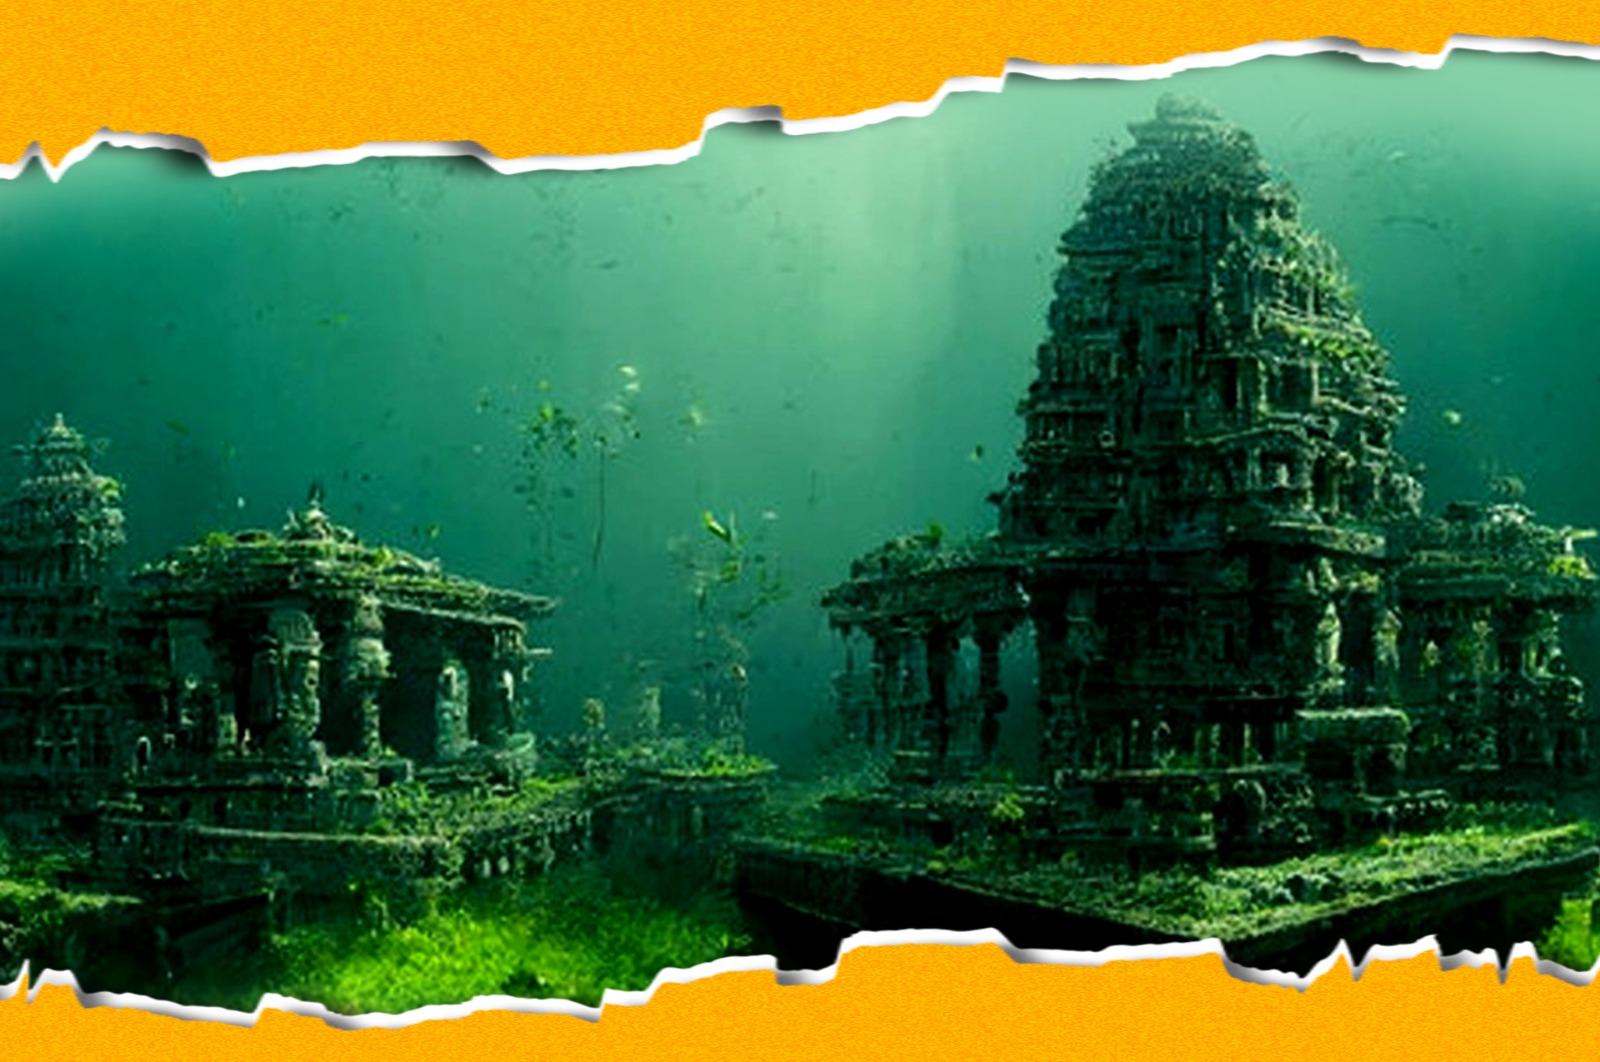 Dwarka - The Underwater City